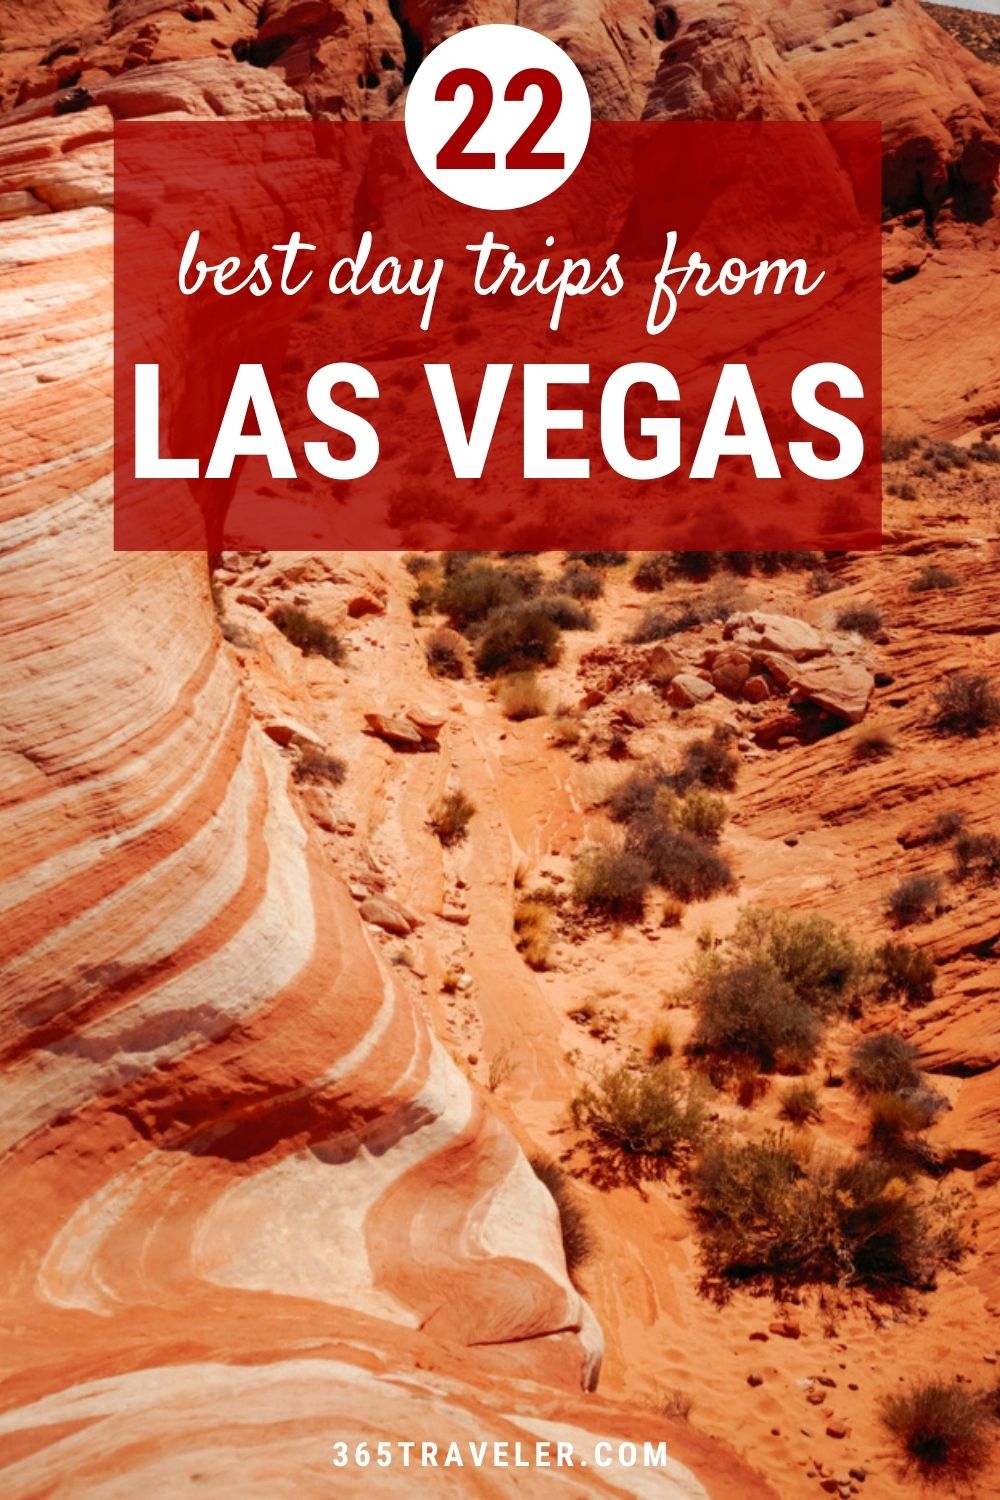 22 BEST WEEKEND GETAWAYS & DAY TRIPS FROM LAS VEGAS